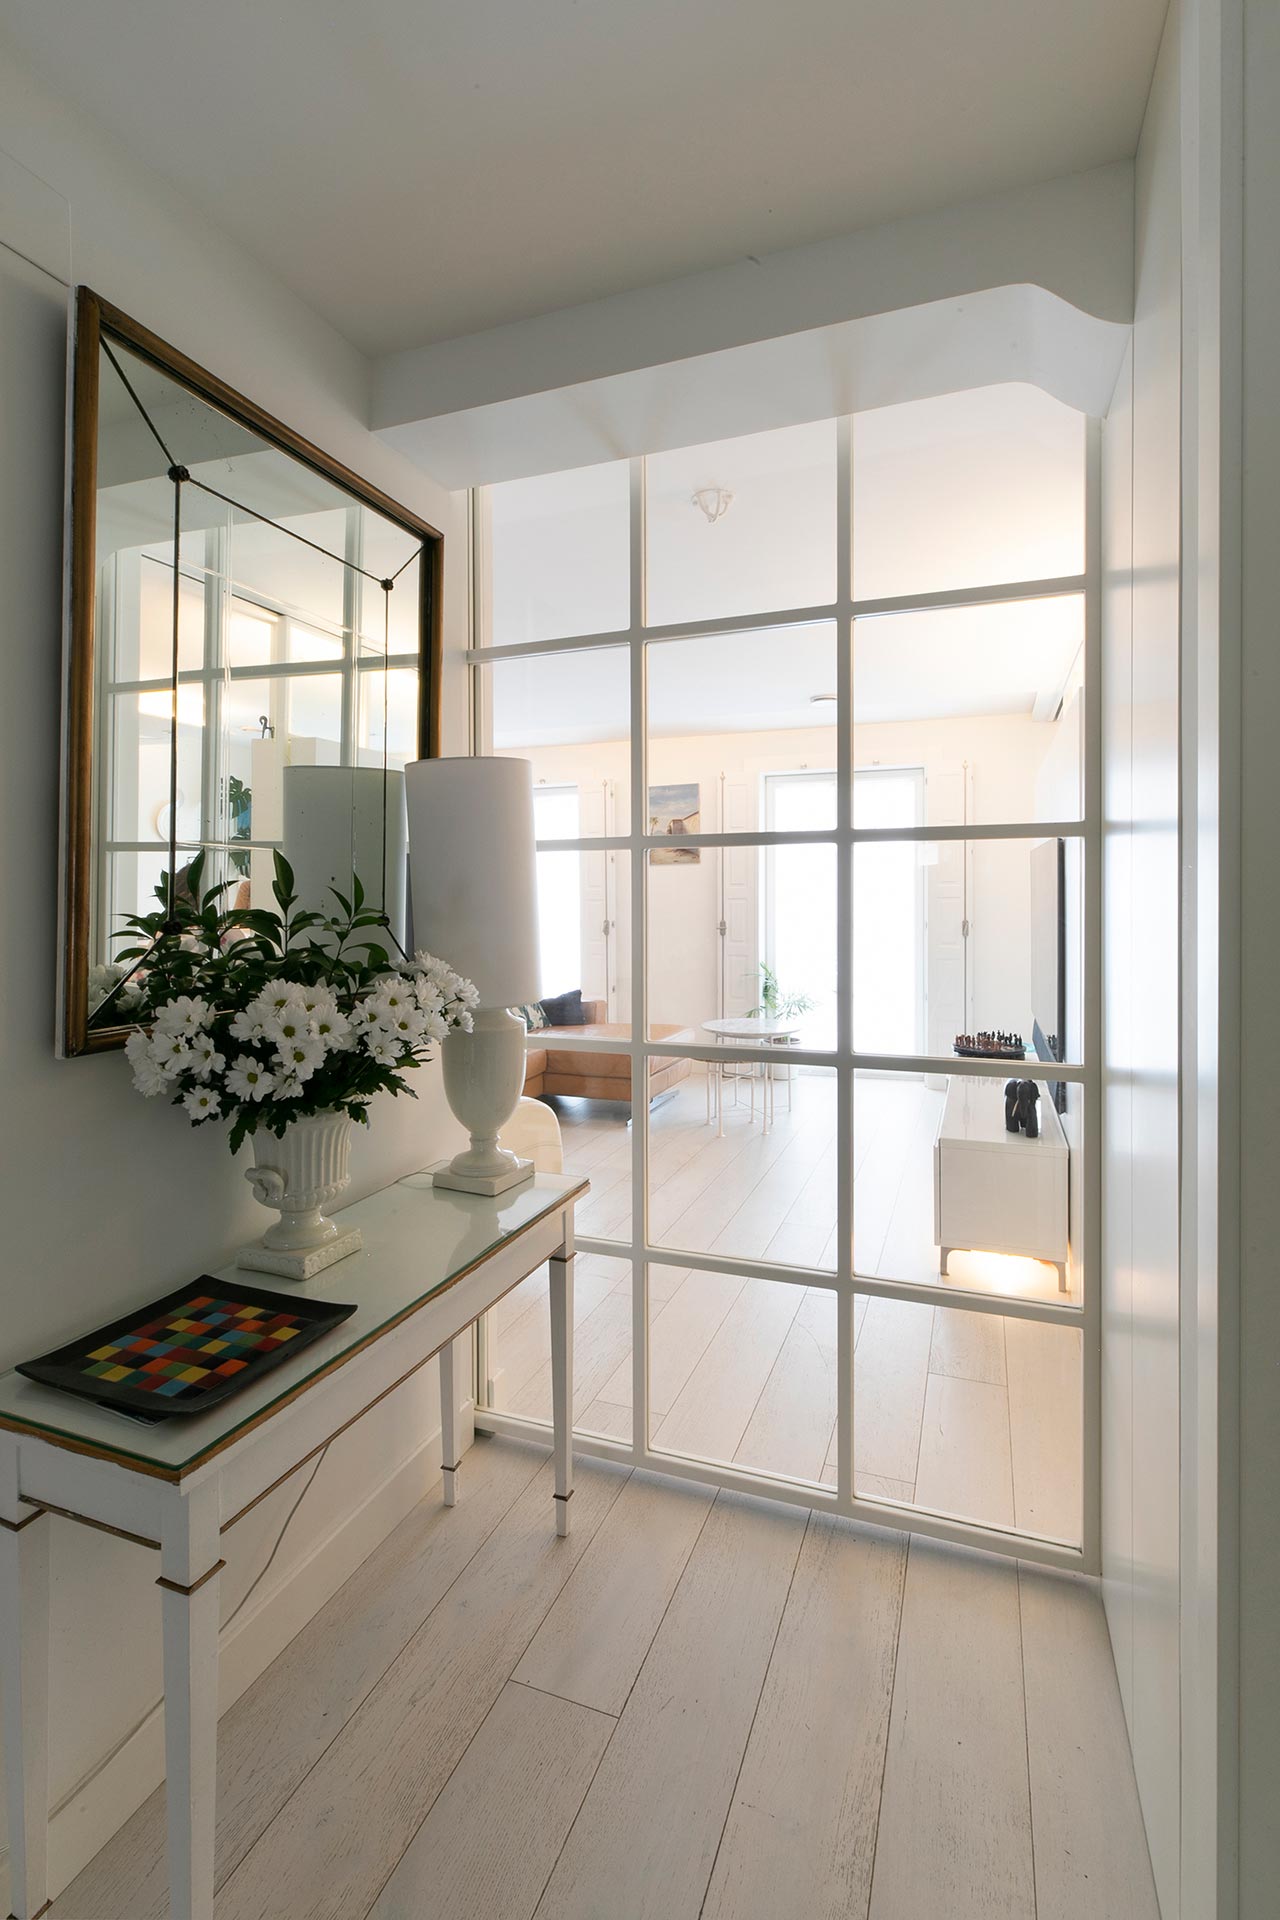 Recibidor con puertas de cristal en reforma de vivienda moderna diseñada por Moah Arquitectos en Santander